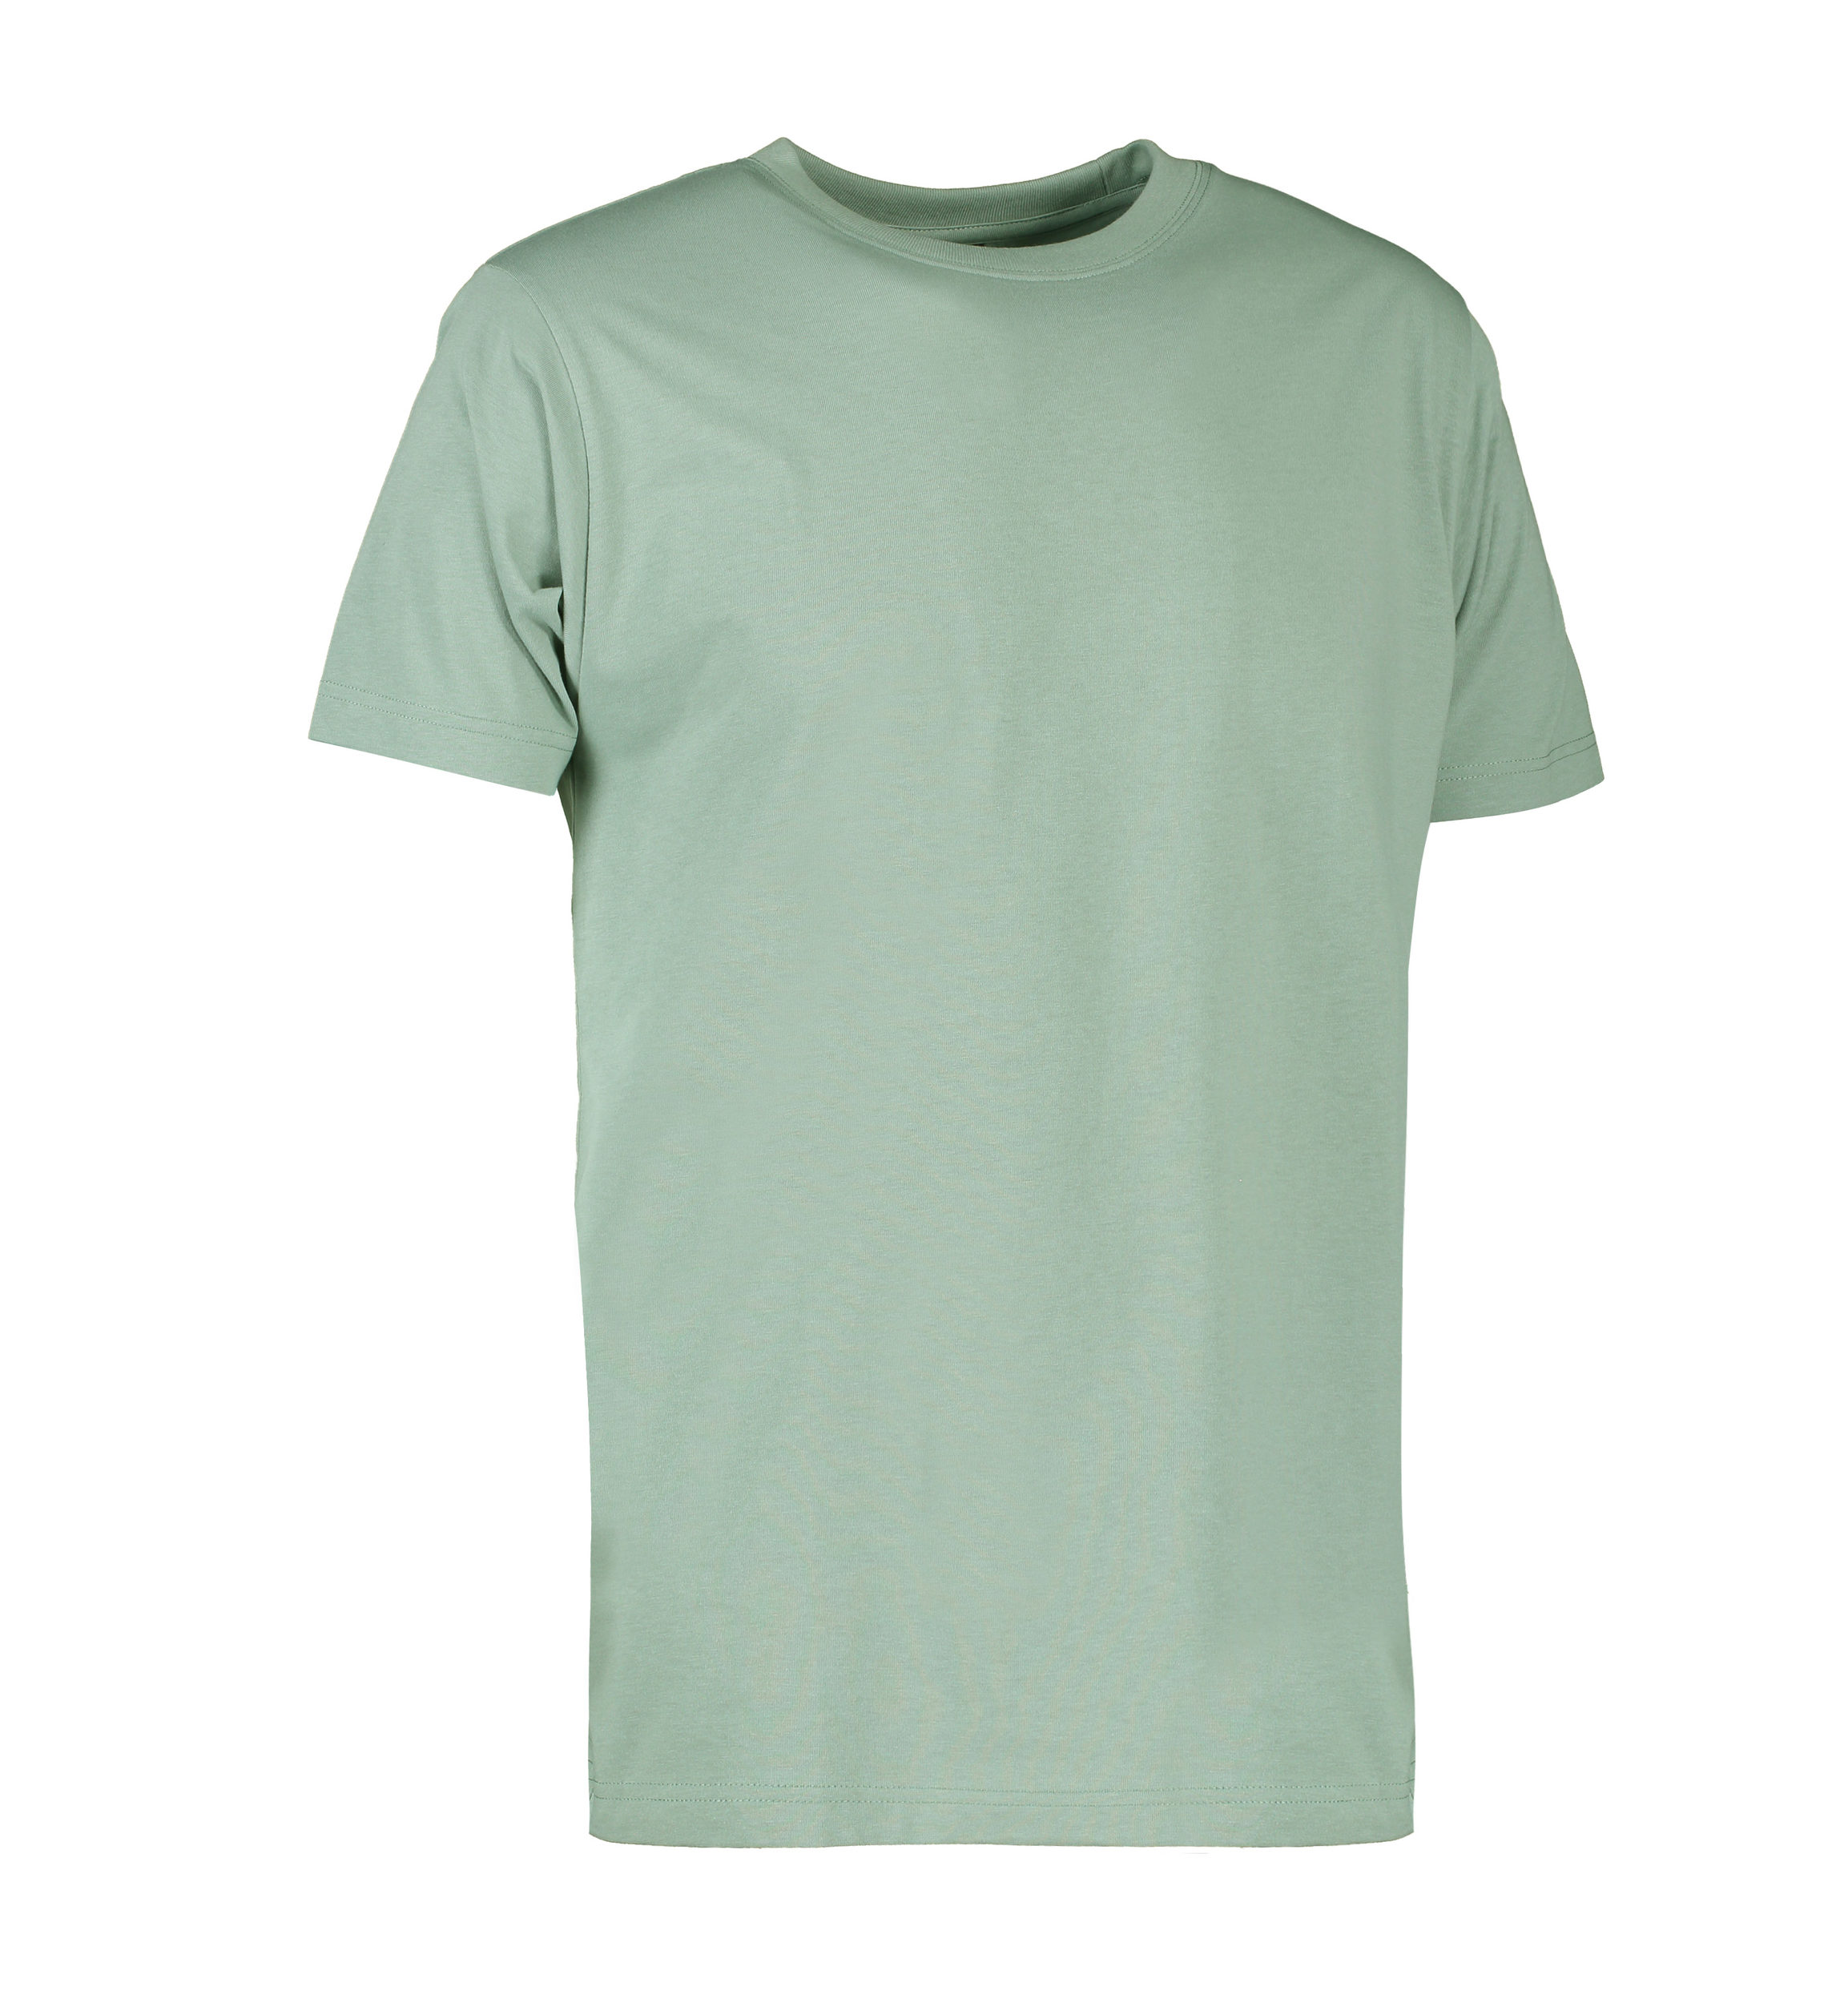 Se Slidstærk t-shirt i støvet grøn til mænd - 2XL hos Sygeplejebutikken.dk